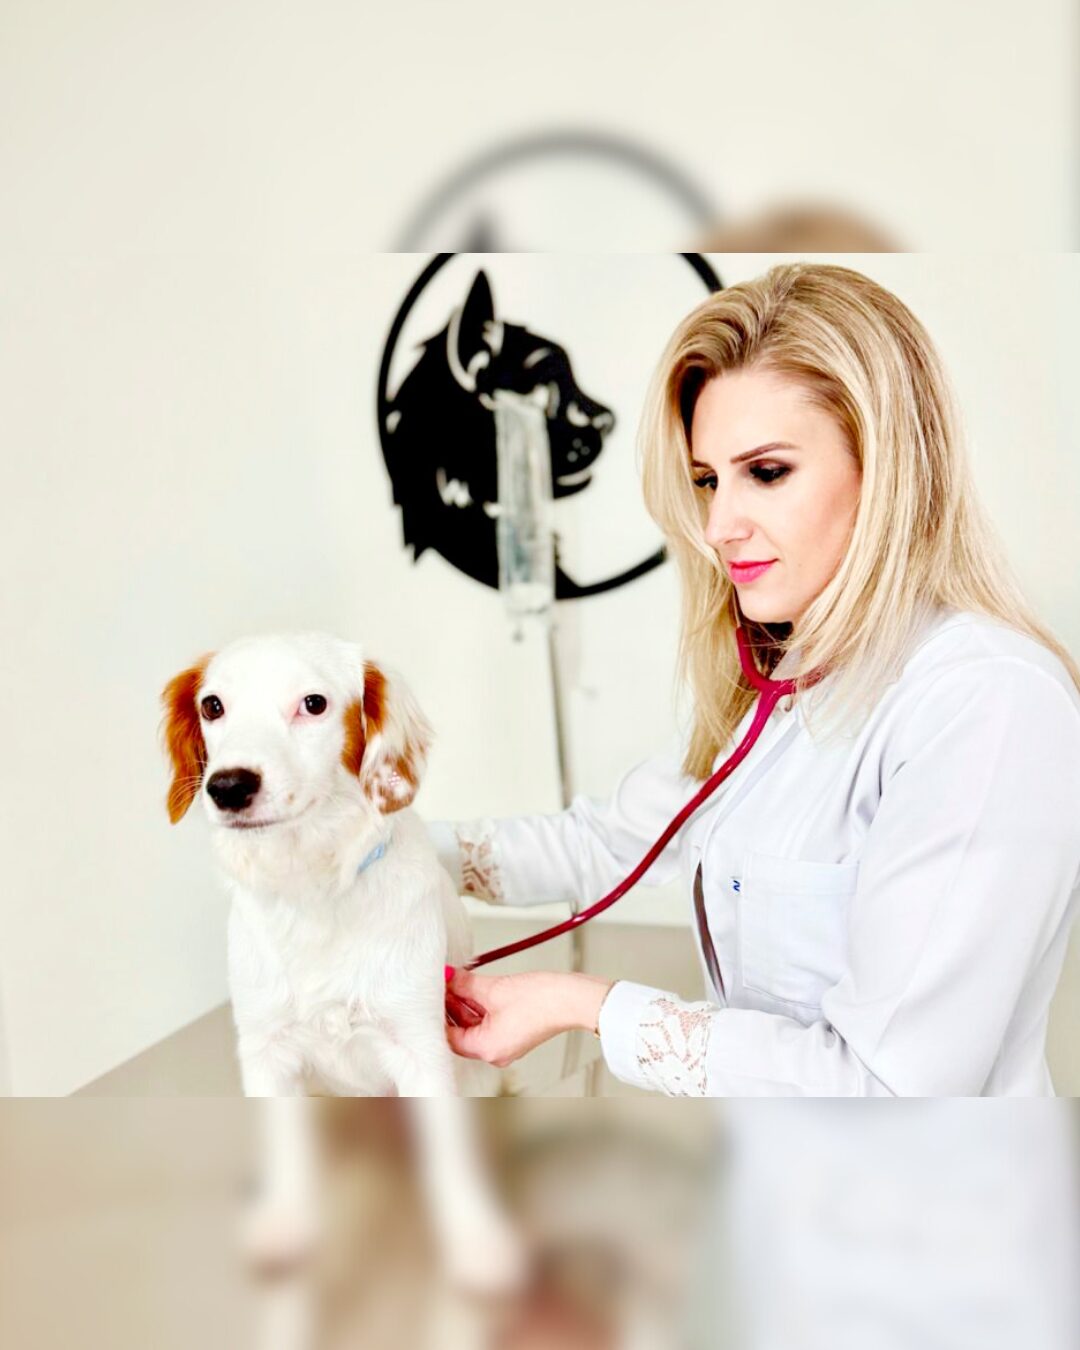 Tecnologia e Cuidado: A inovação da Clínica Veterinária Araupatas no bem-estar dos animais